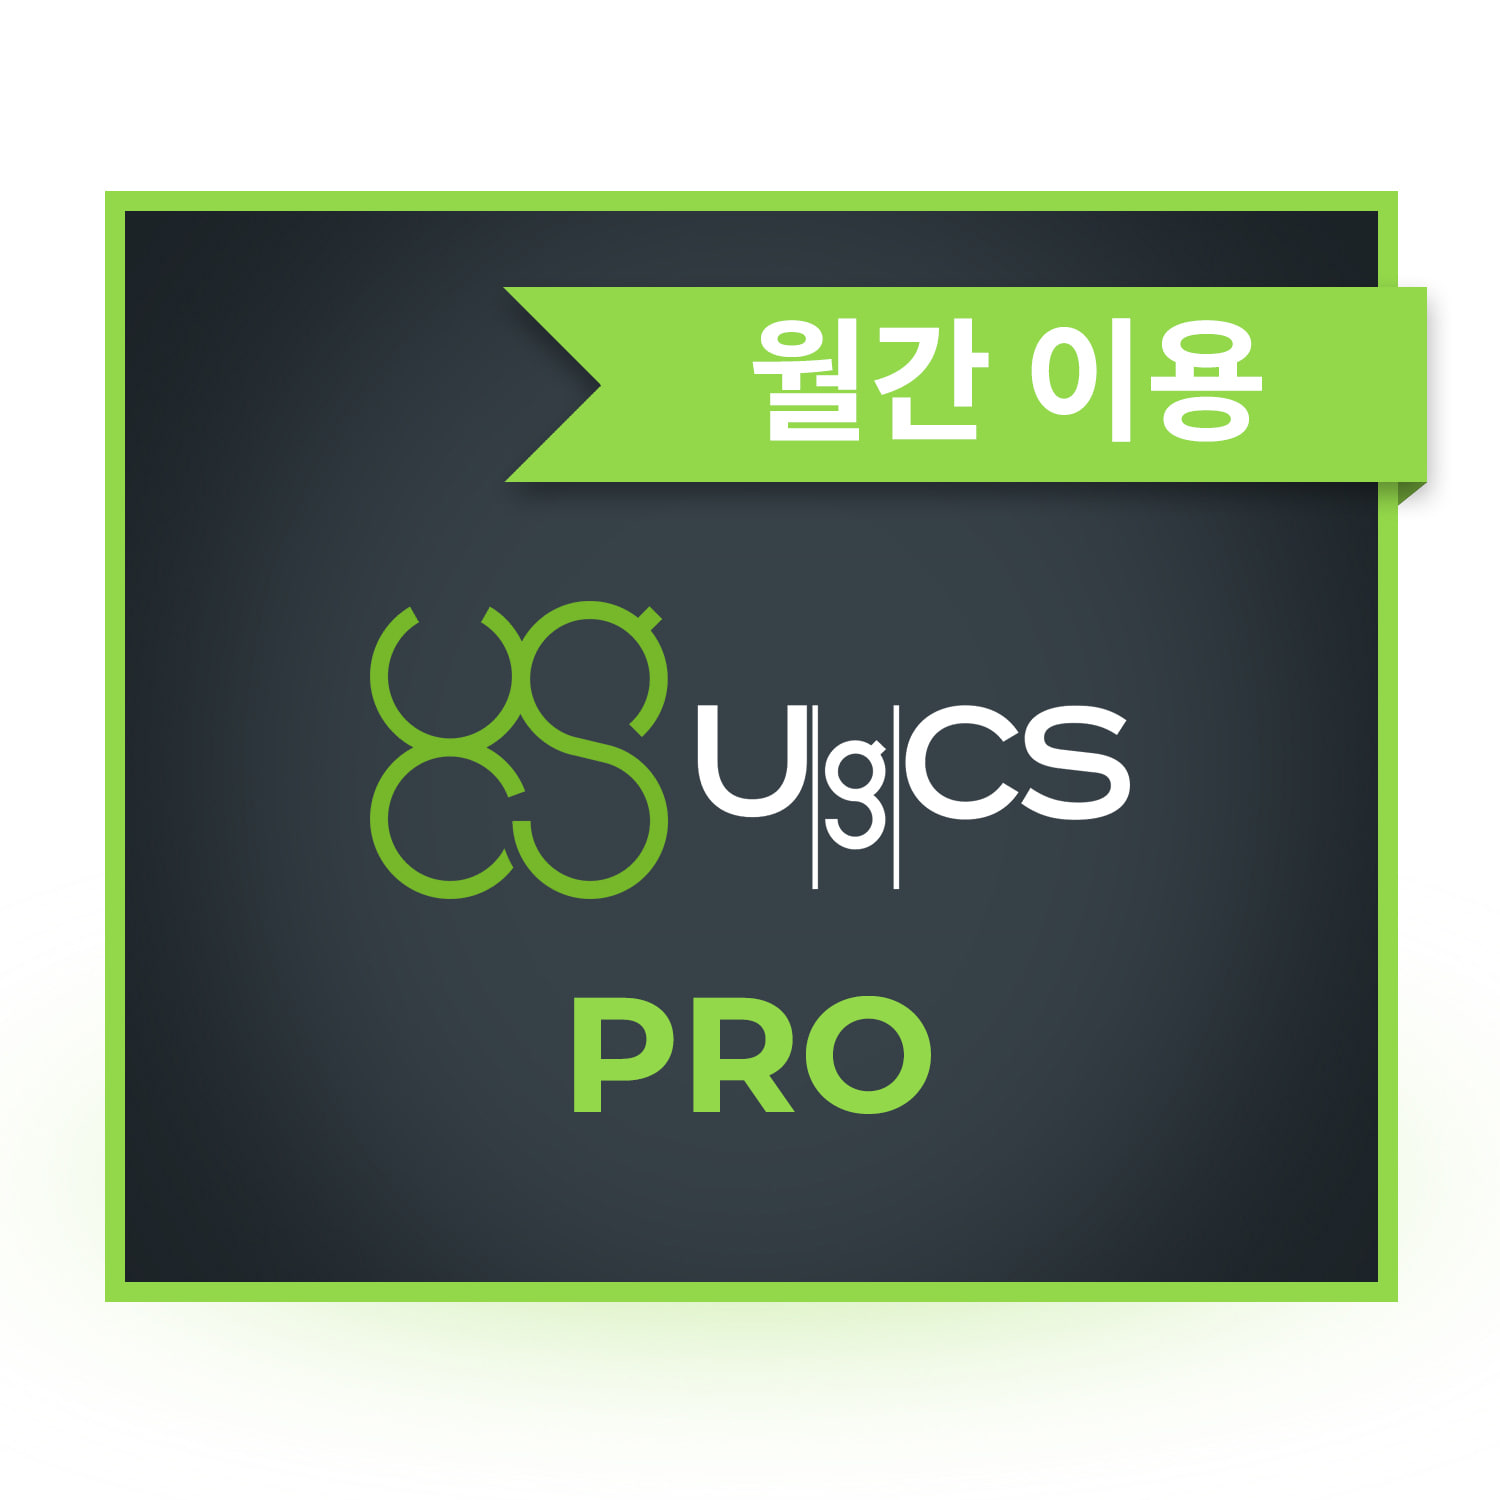 UgCS Pro 드론관제 측량 소프트웨어 월간 이용 헬셀